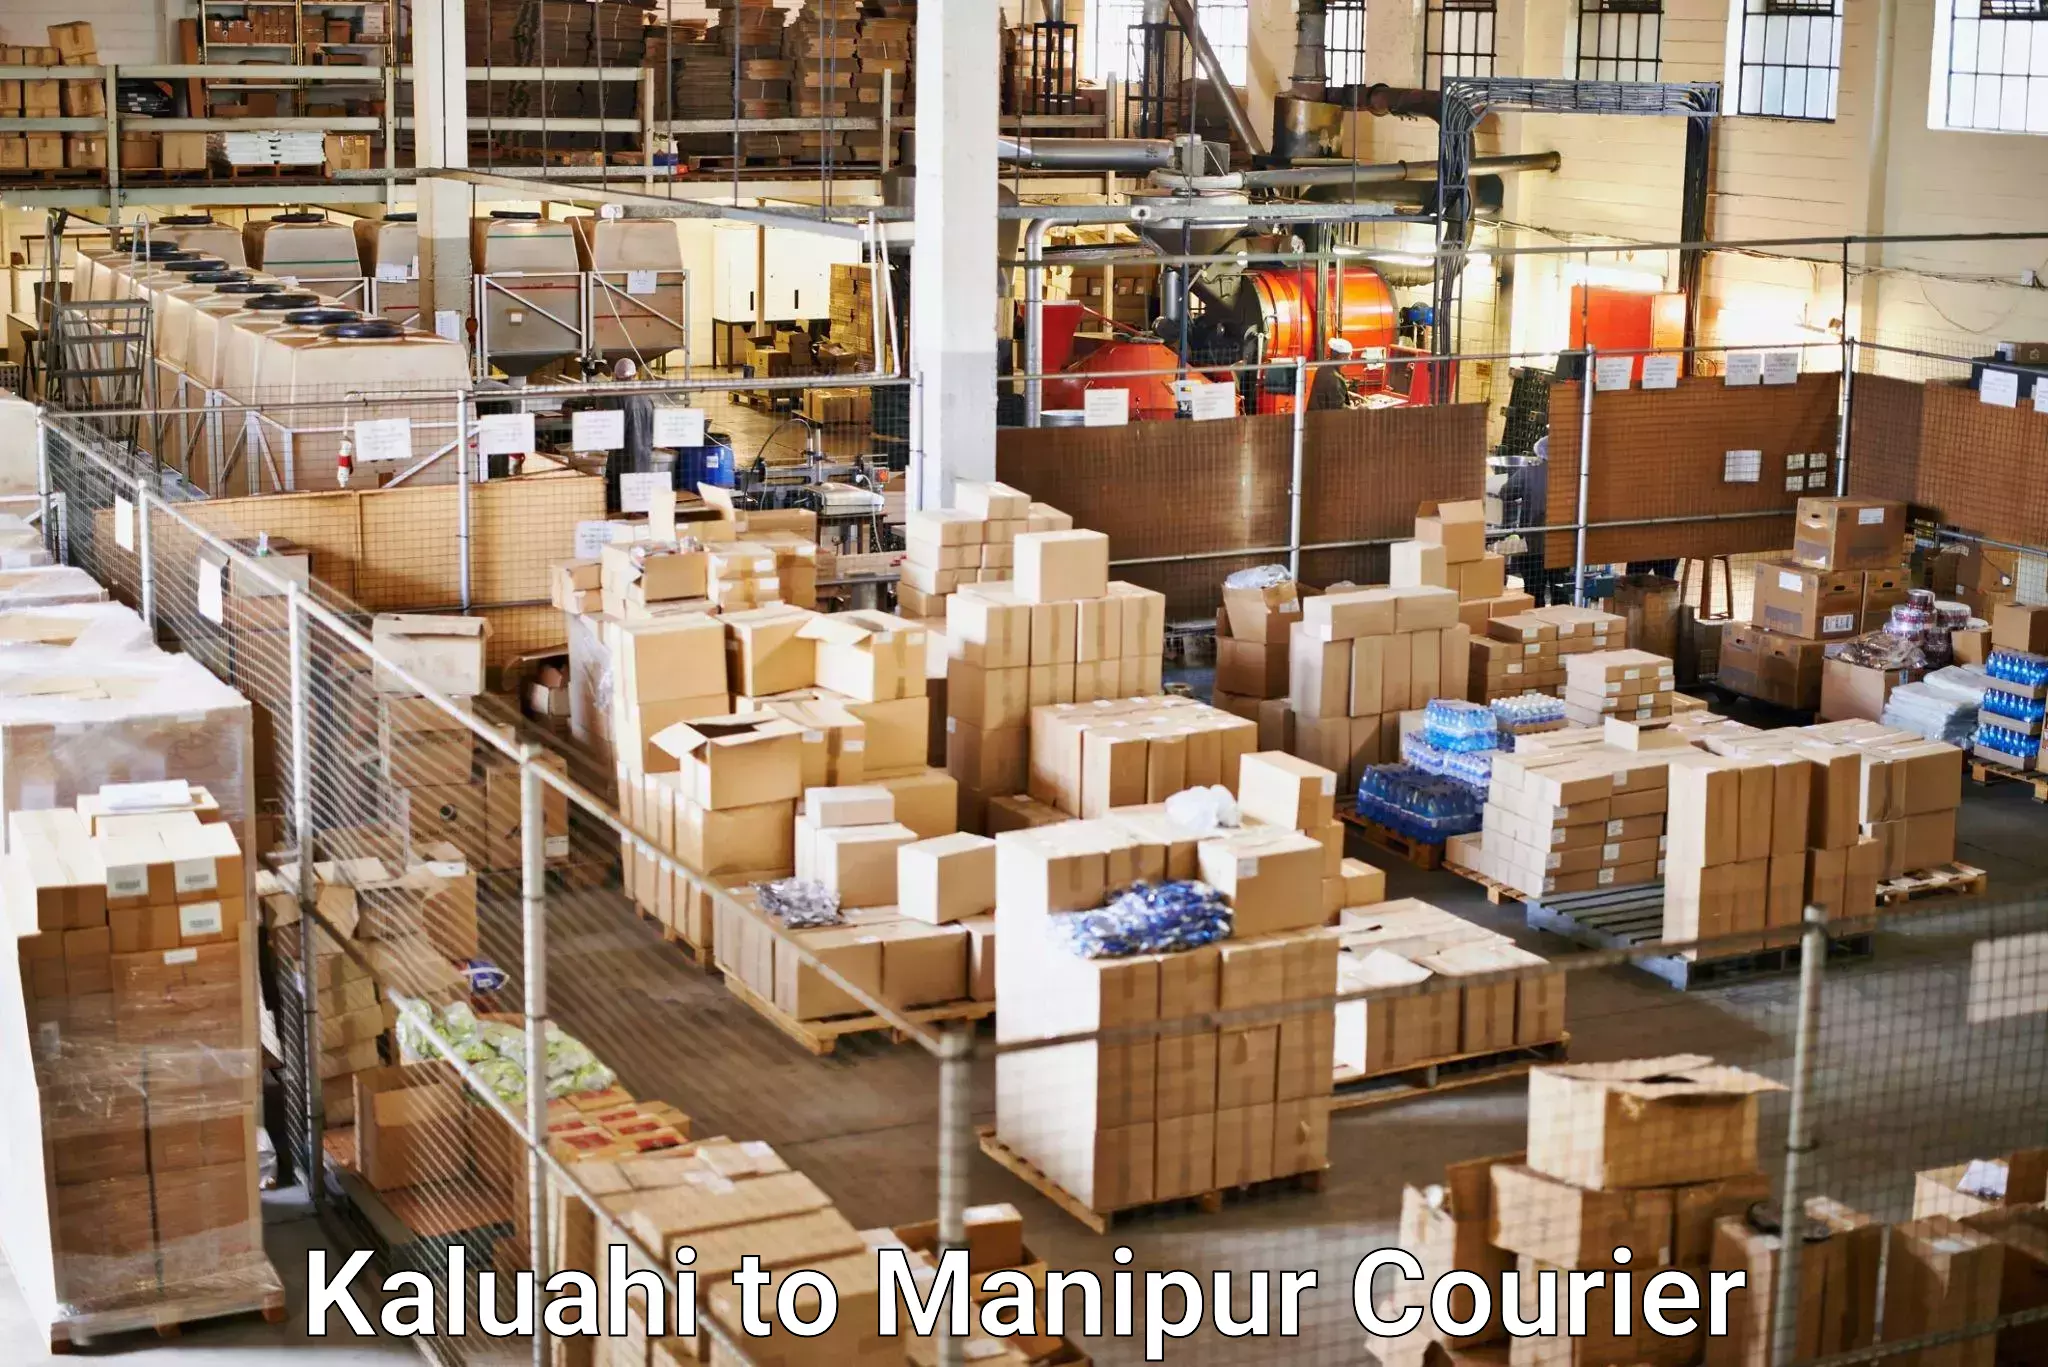 On-call courier service Kaluahi to Moirang